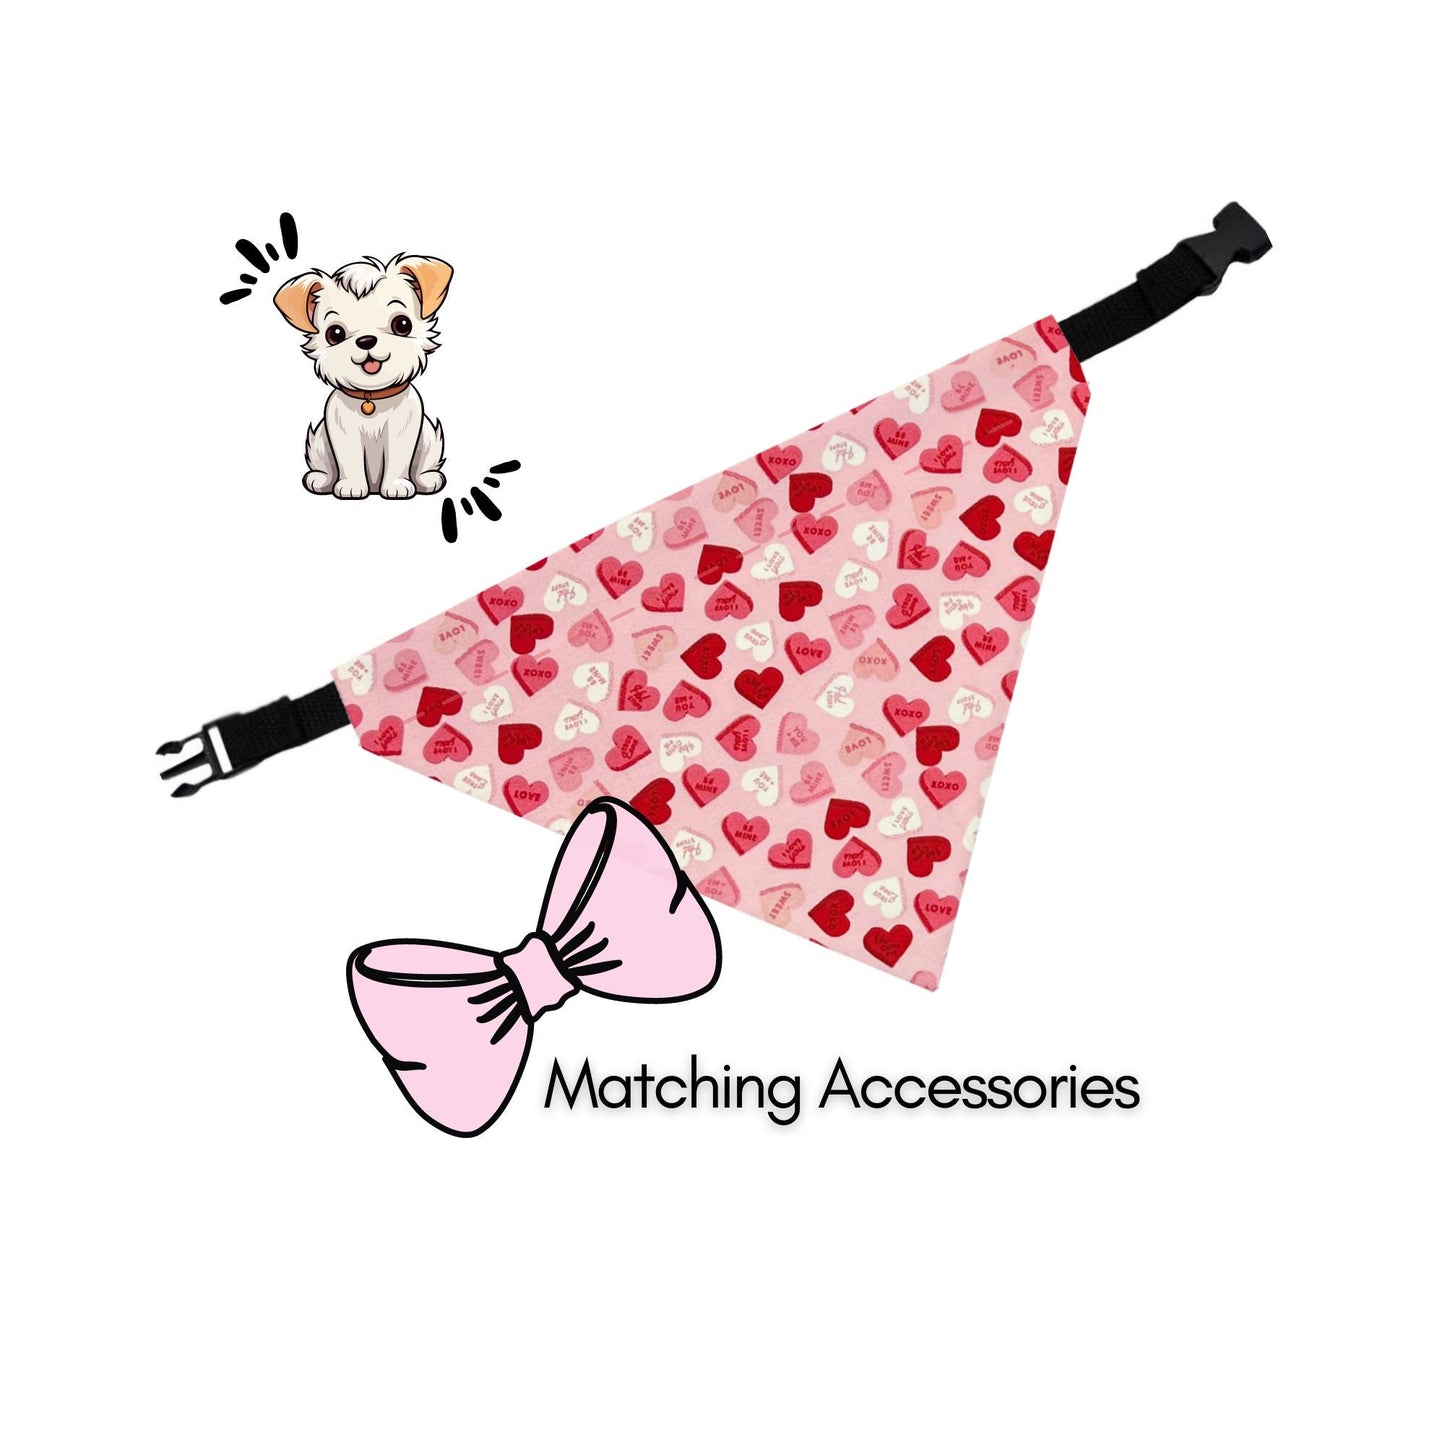 Over the Collar Dog Bandana Hearts, Dog Lover Custom Bandana for Valentine, New Puppy Gift, Summer Dog Bandana Pink